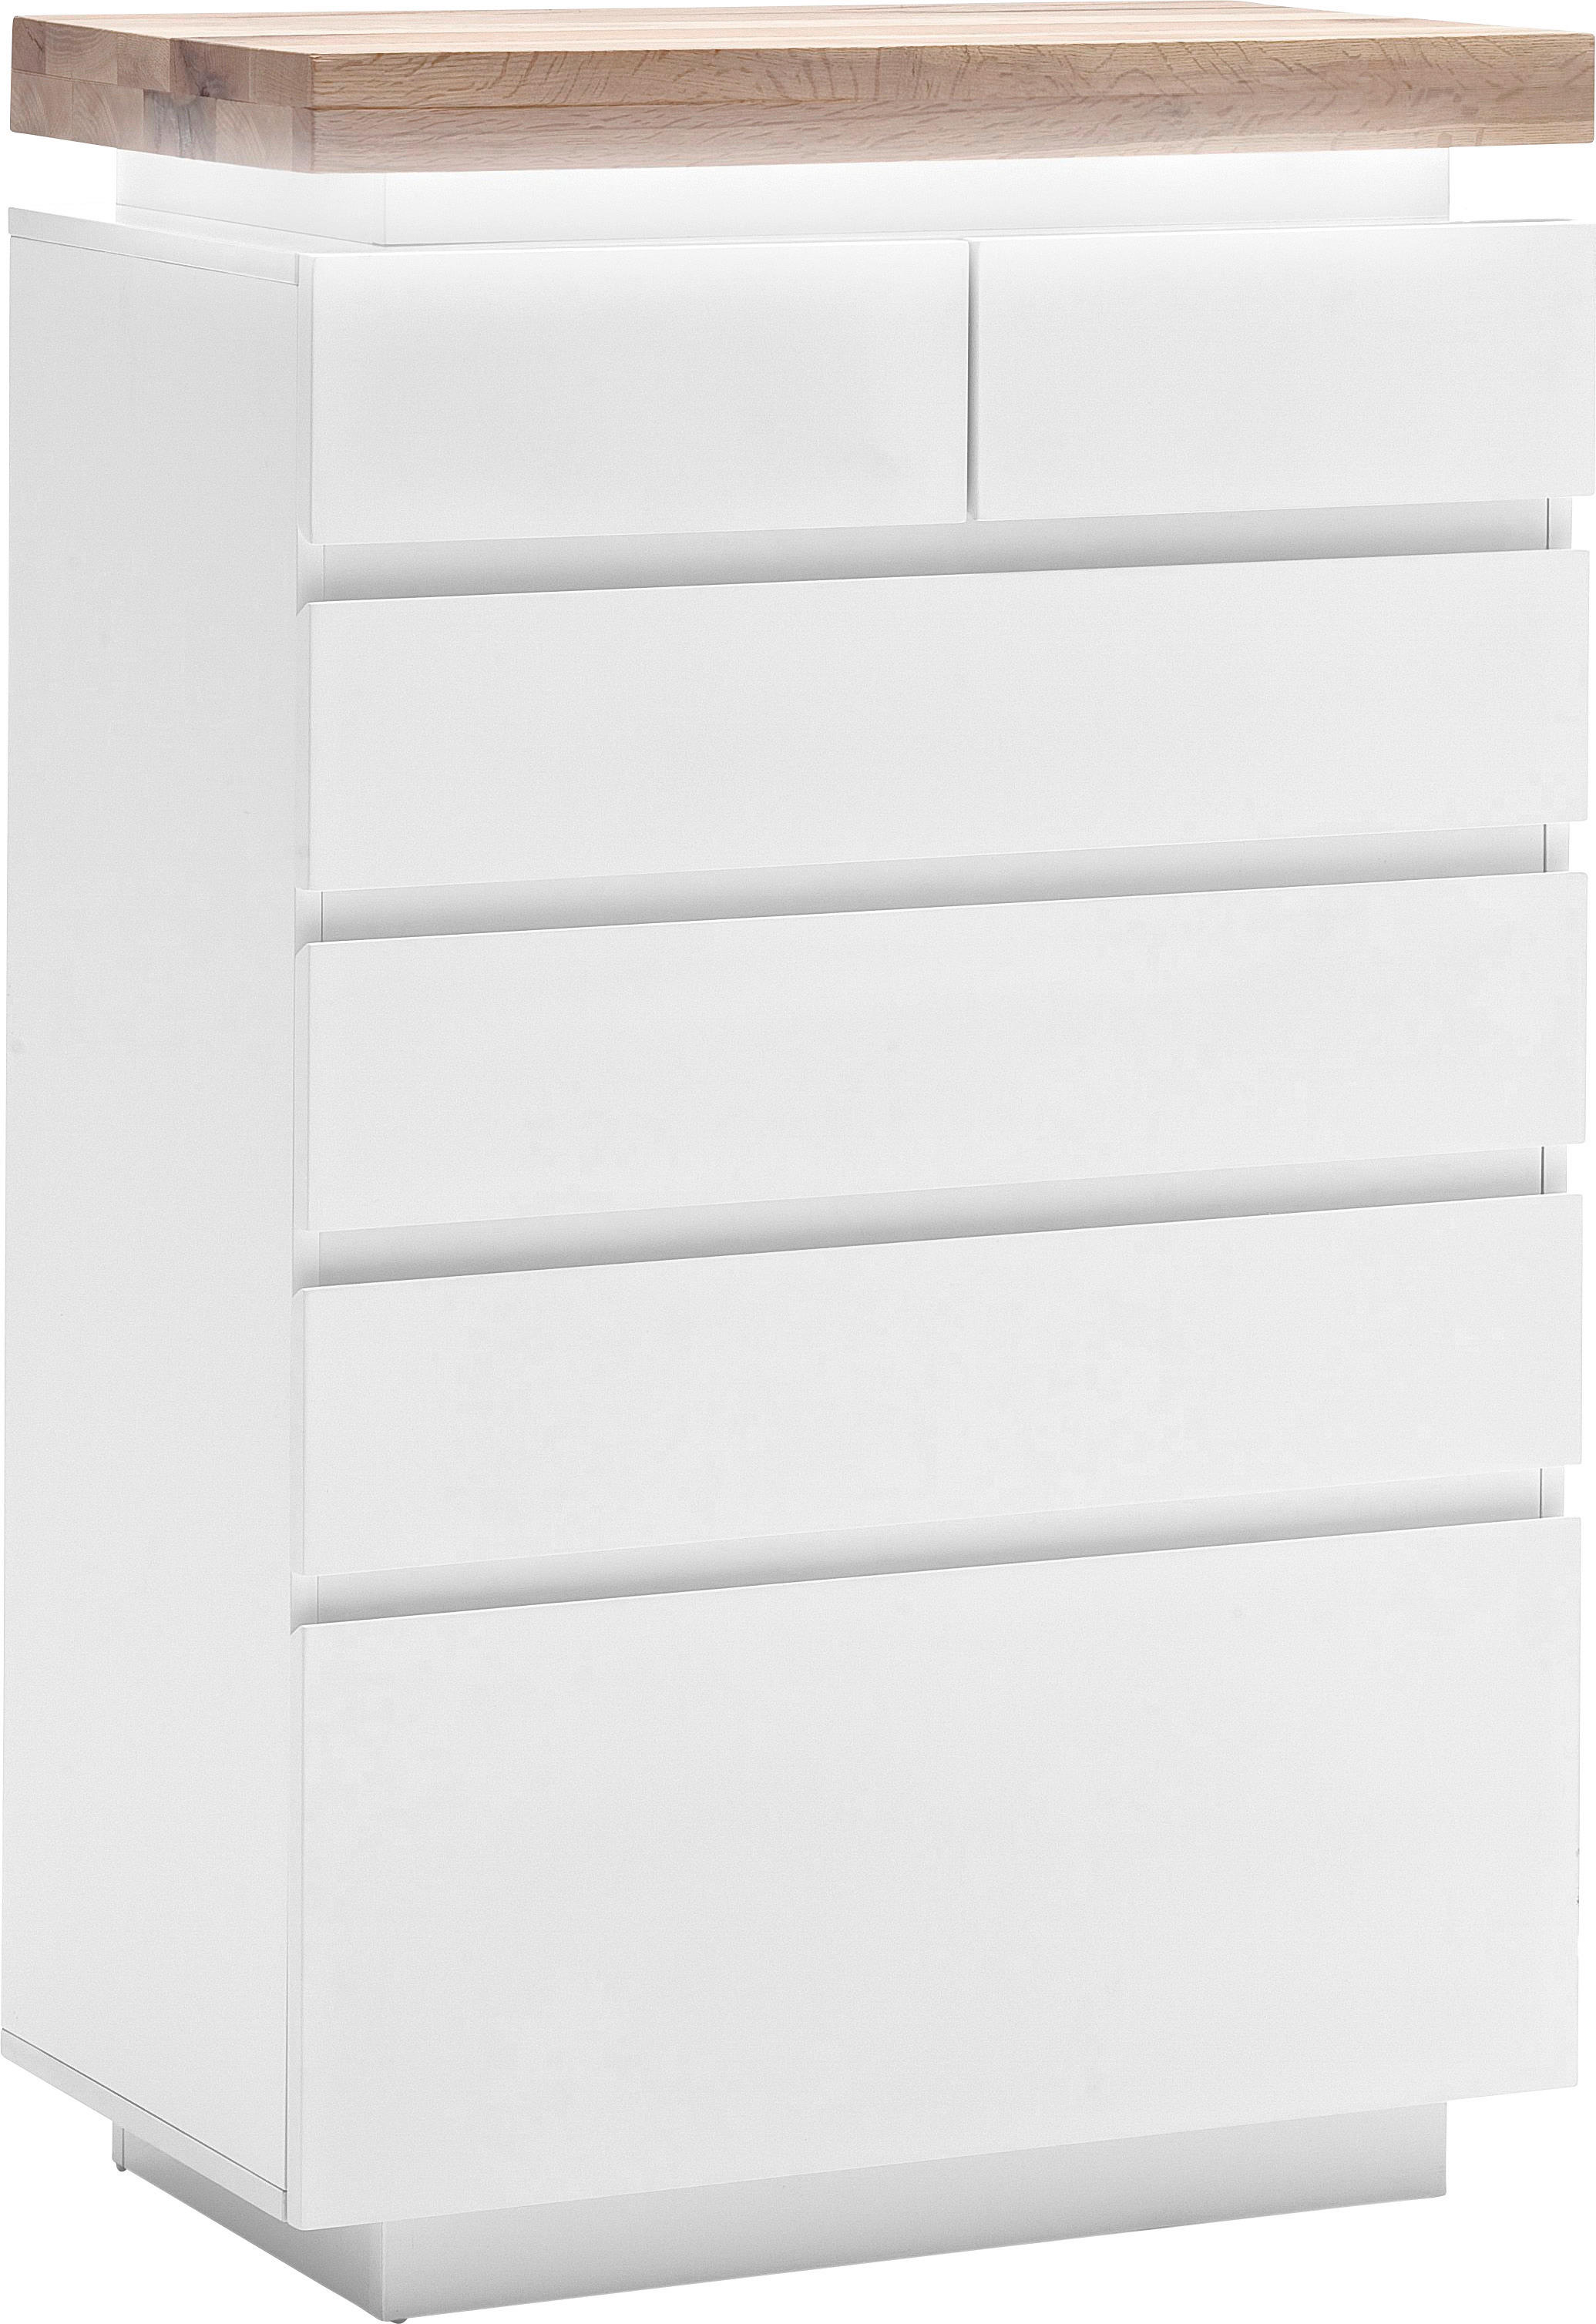 KOMMODE Eiche massiv Weiß, Eichefarben  - Eichefarben/Weiß, Design, Holz/Holzwerkstoff (73/114/40cm)